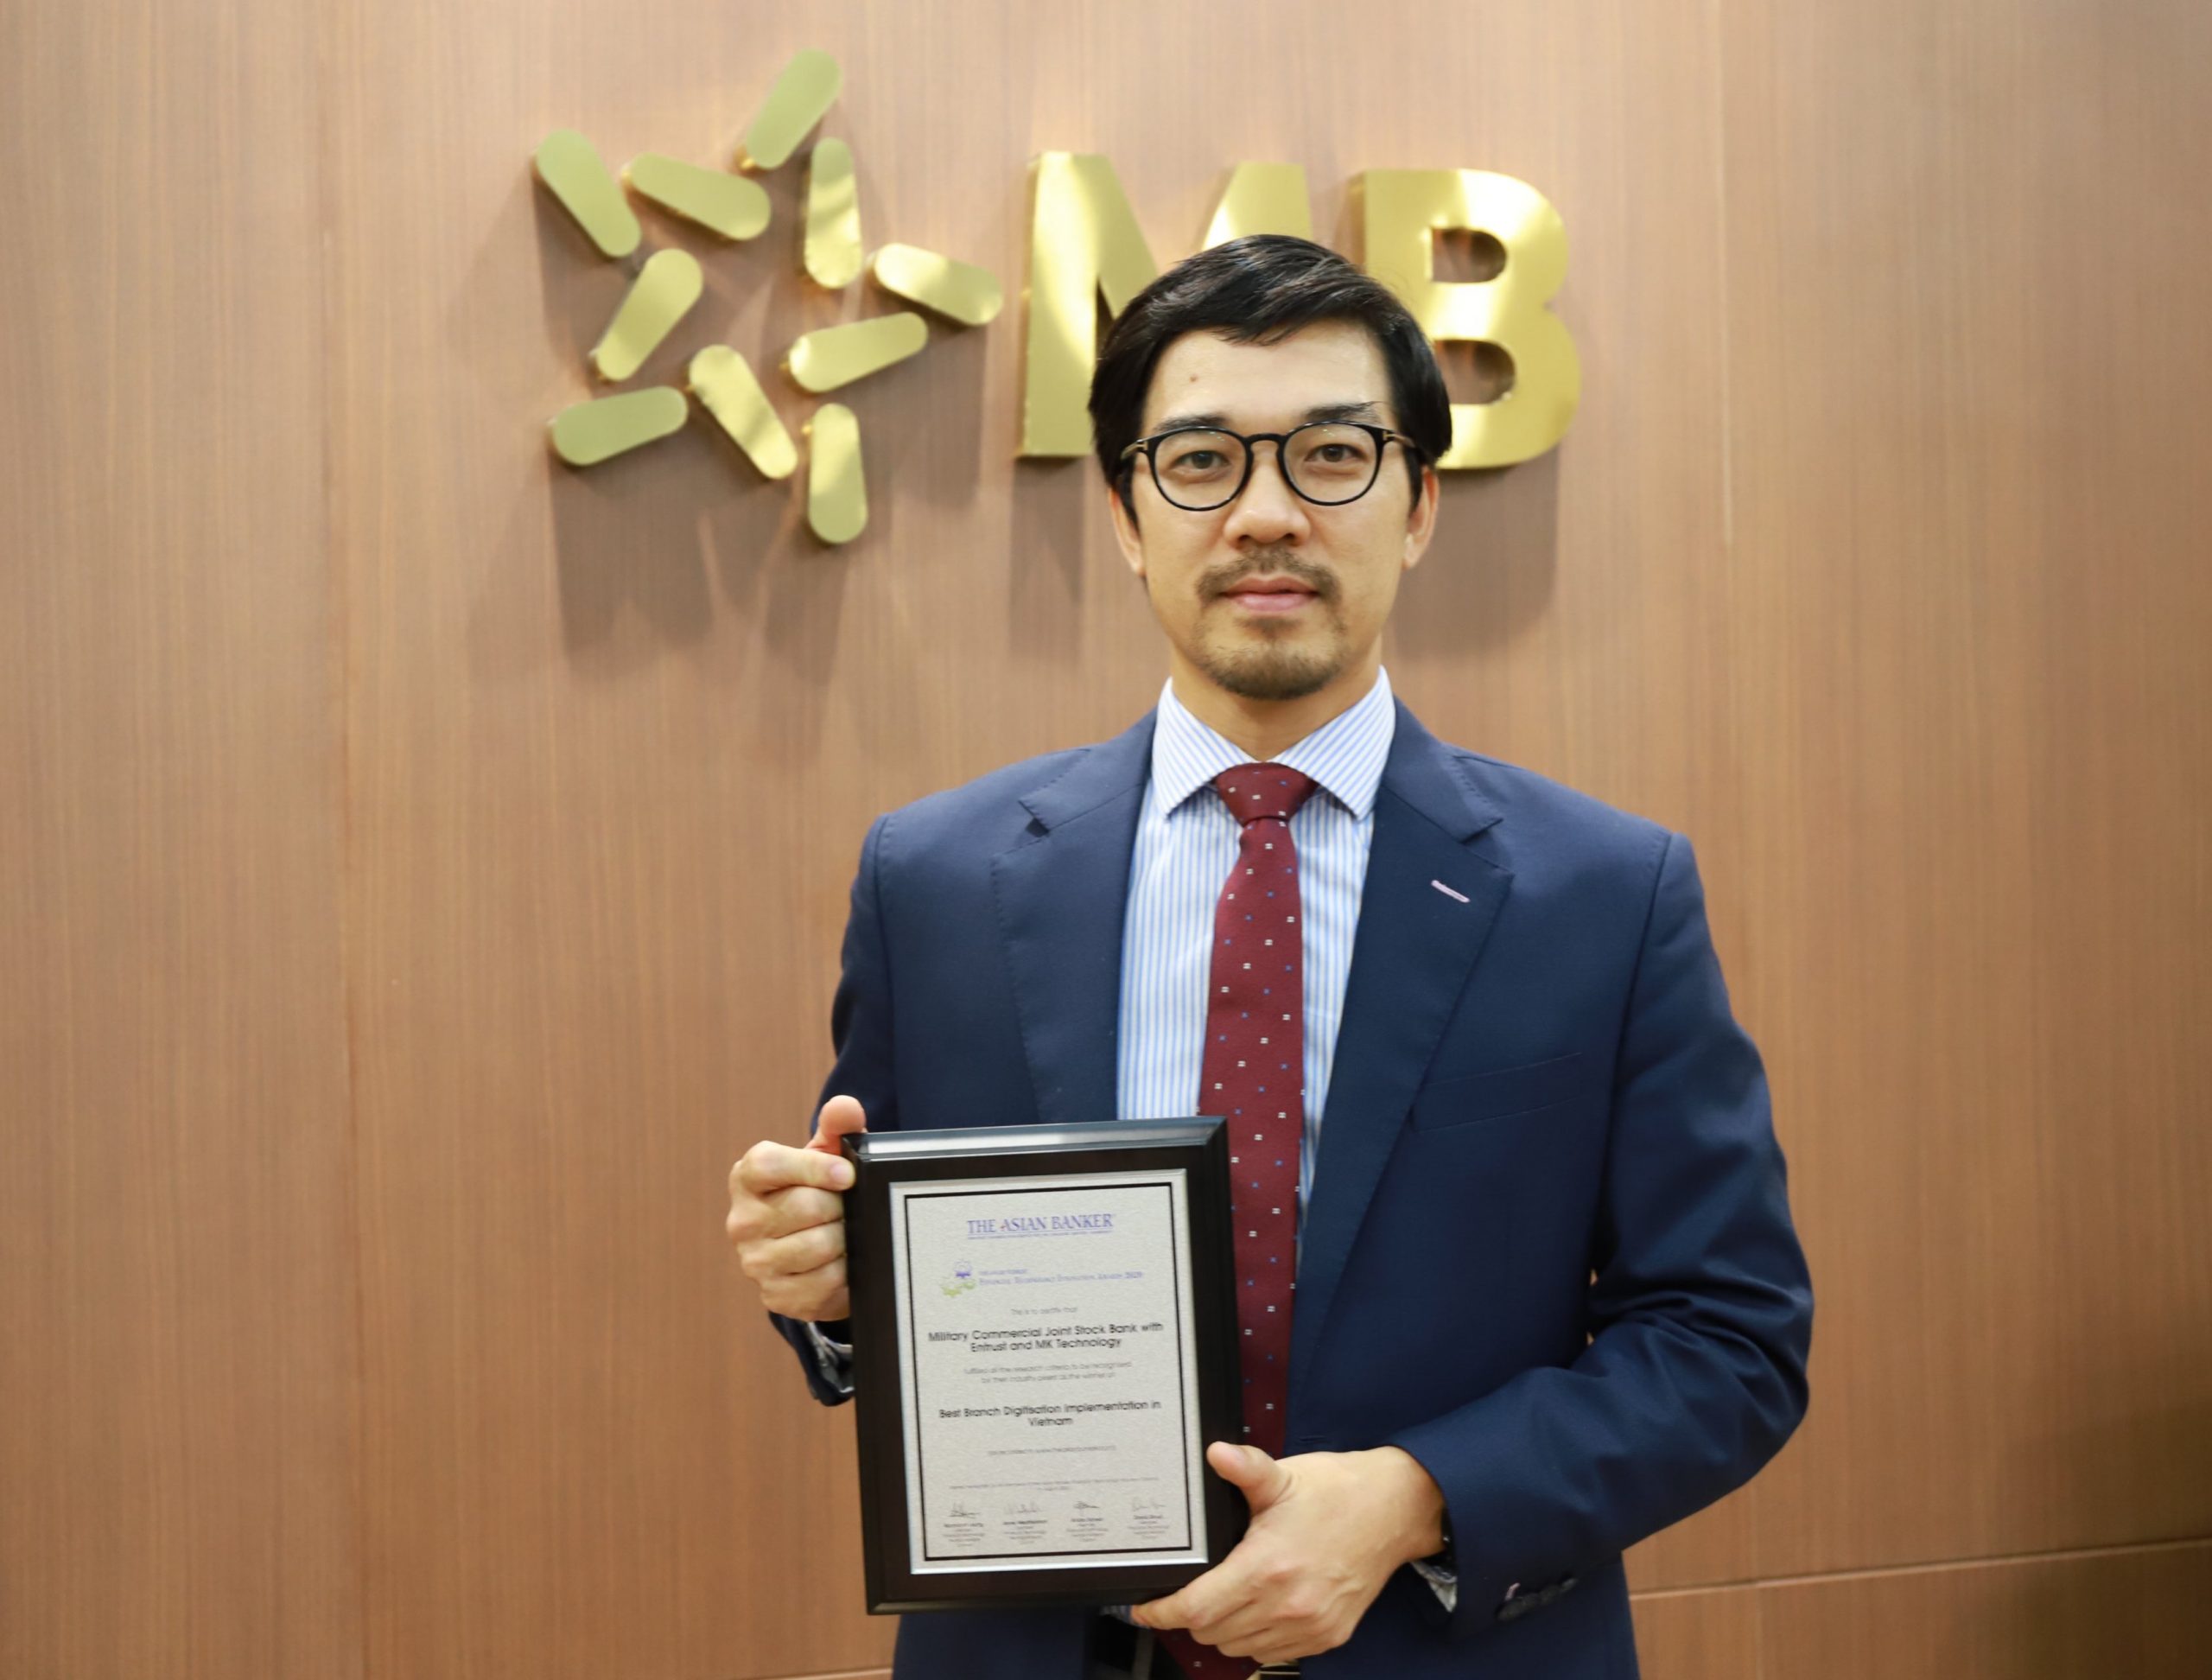 MB Bank vinh dự được nhận giải thưởng từ The Asian Banker